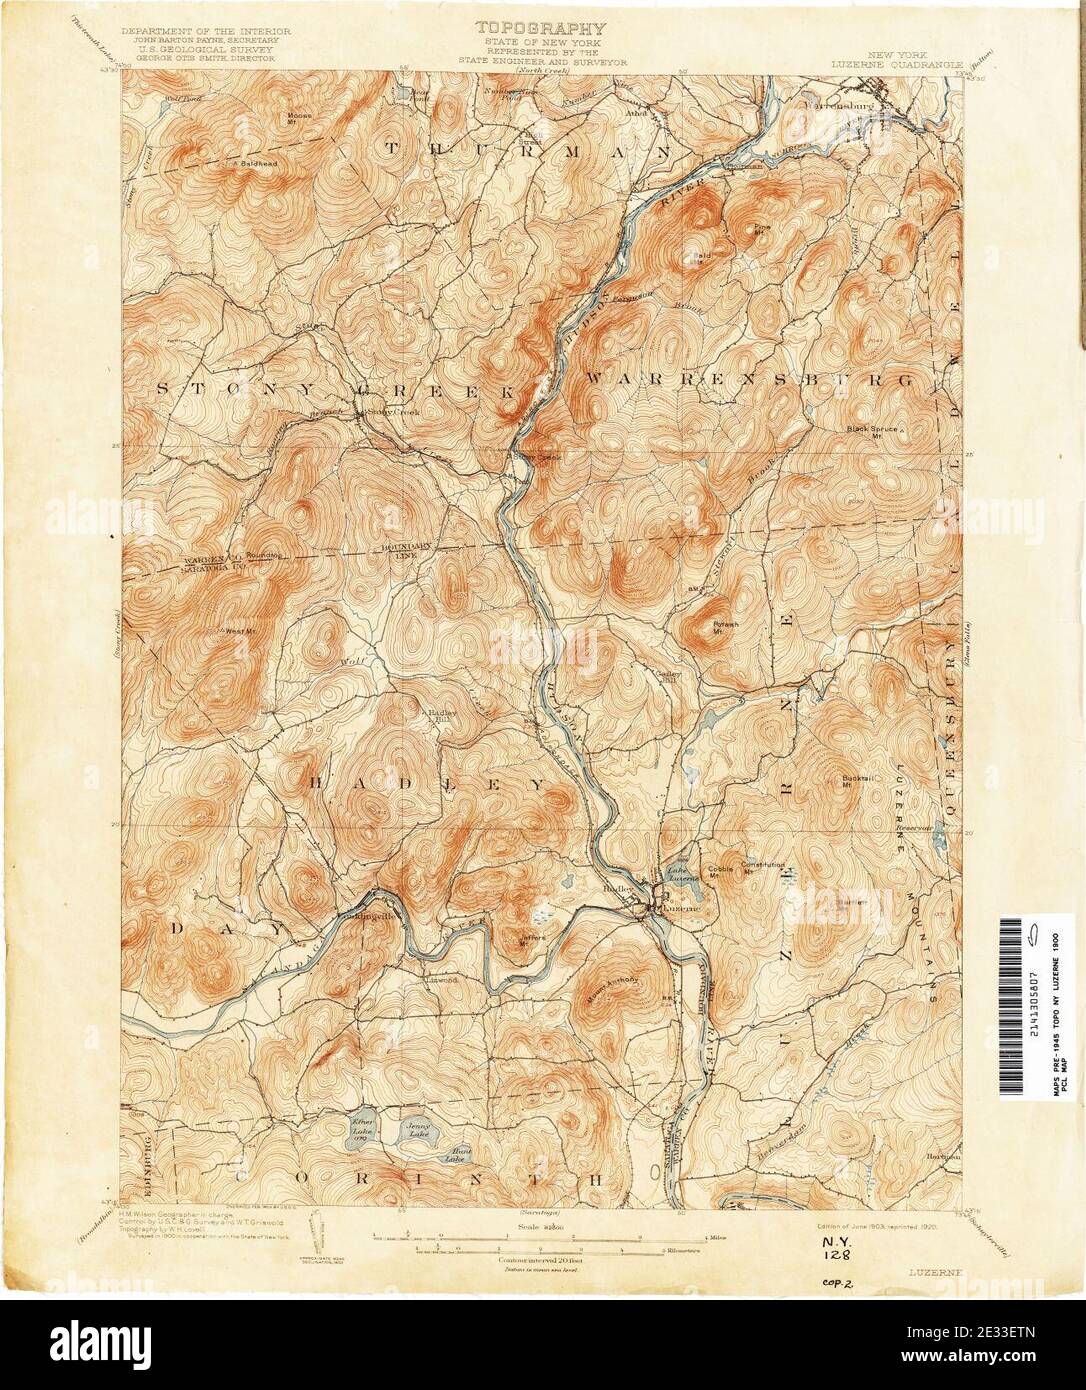 Luzerne New York USGS topo map 1900. Stock Photo